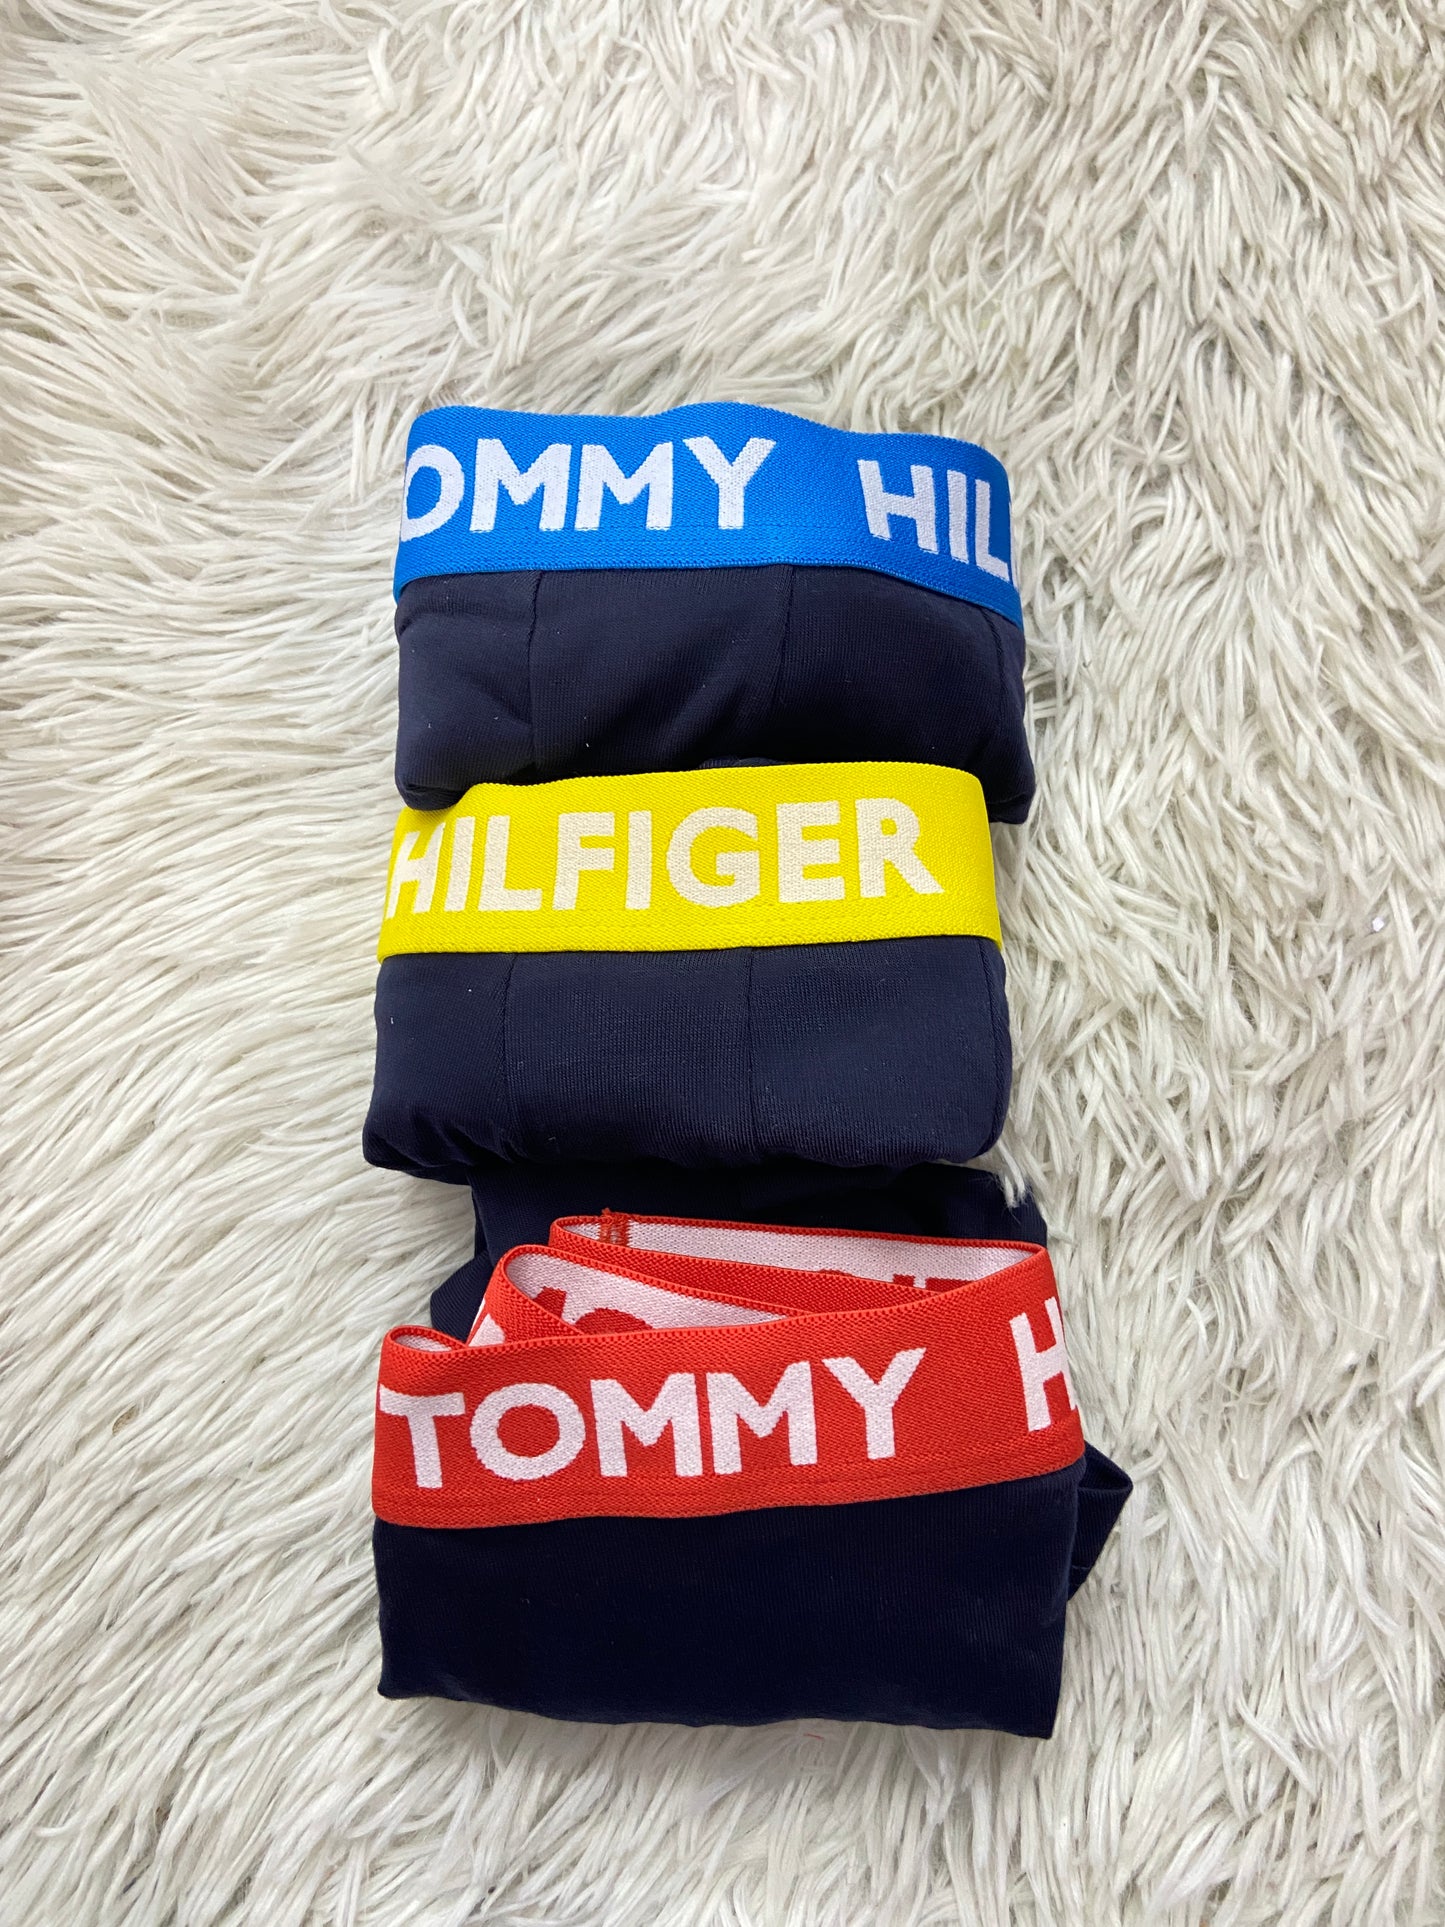 Boxer Tommy Hilfiger original, pack de 3, en azul marino y pretina en azul claro, amarillo y rojo.